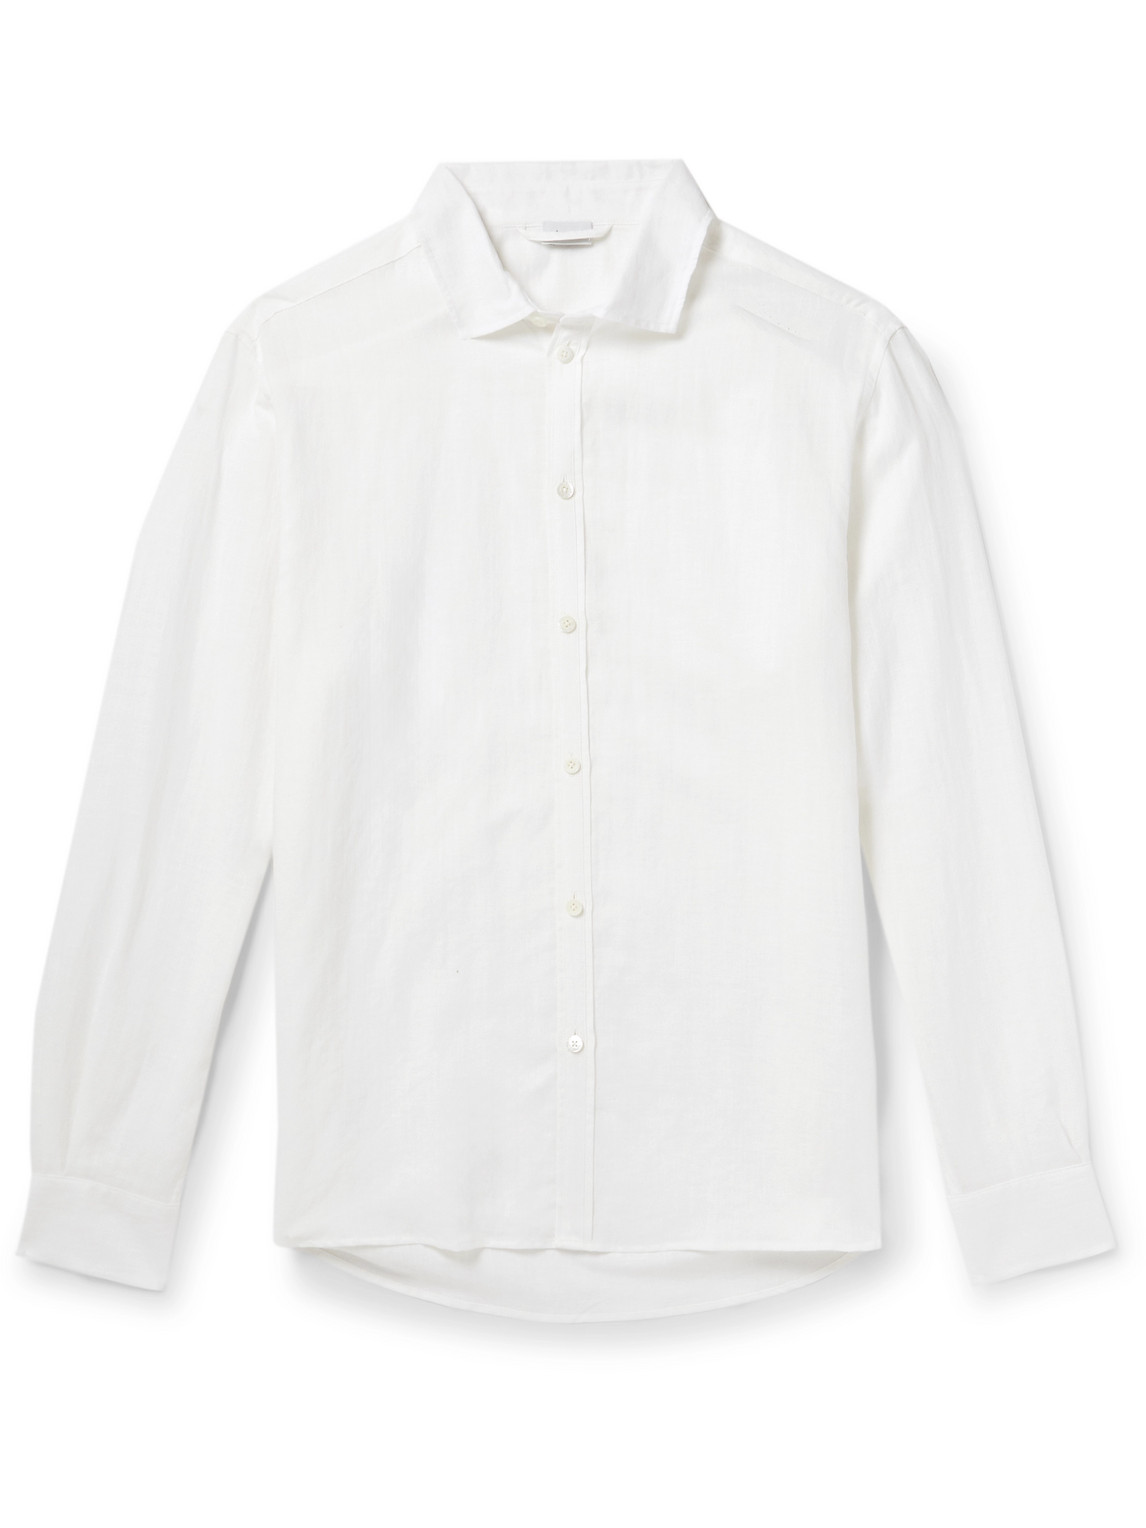 Zimmerli - Cutaway-Collar Linen and Cotton-Blend Shirt - Men - White - L von Zimmerli